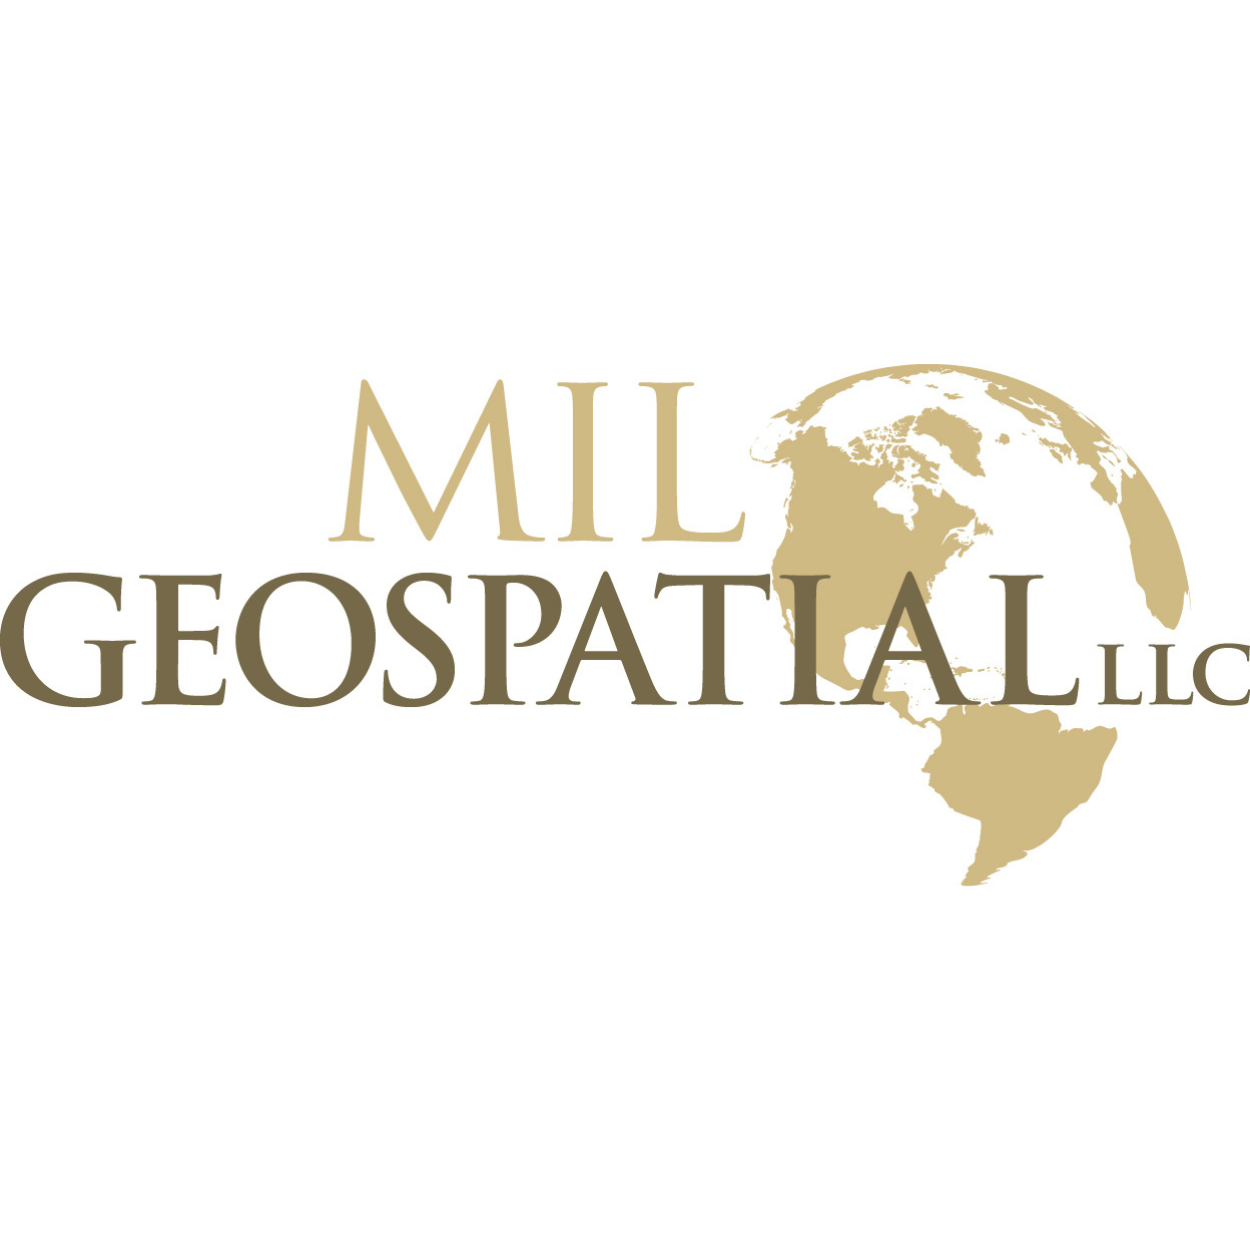 MIL Geospatial, LLC.